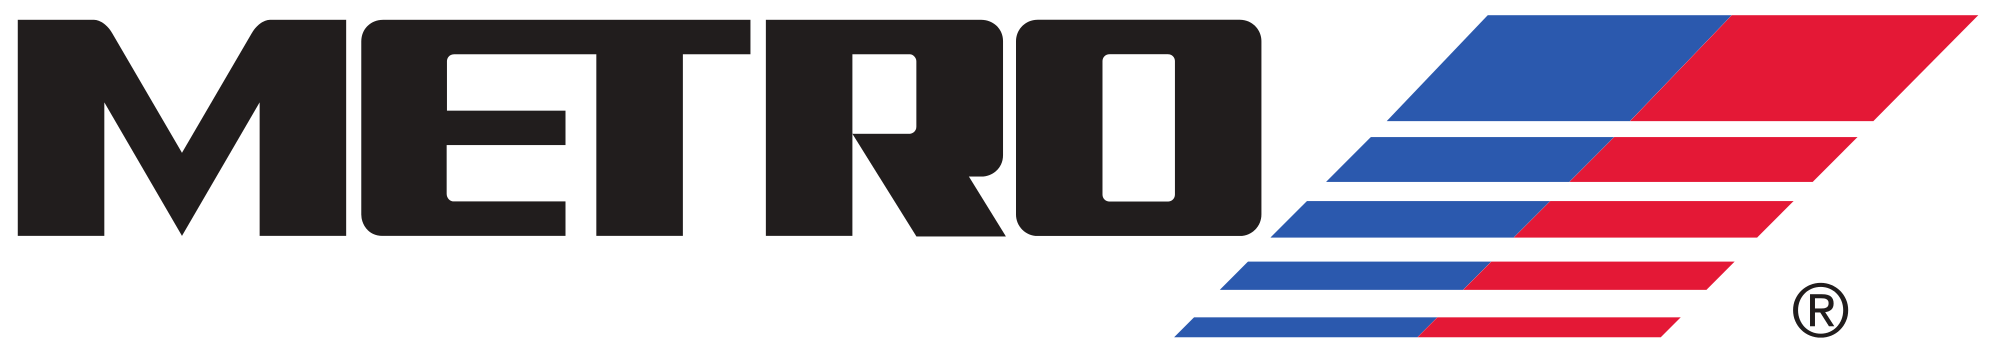 Houston_Metro_logo.svg